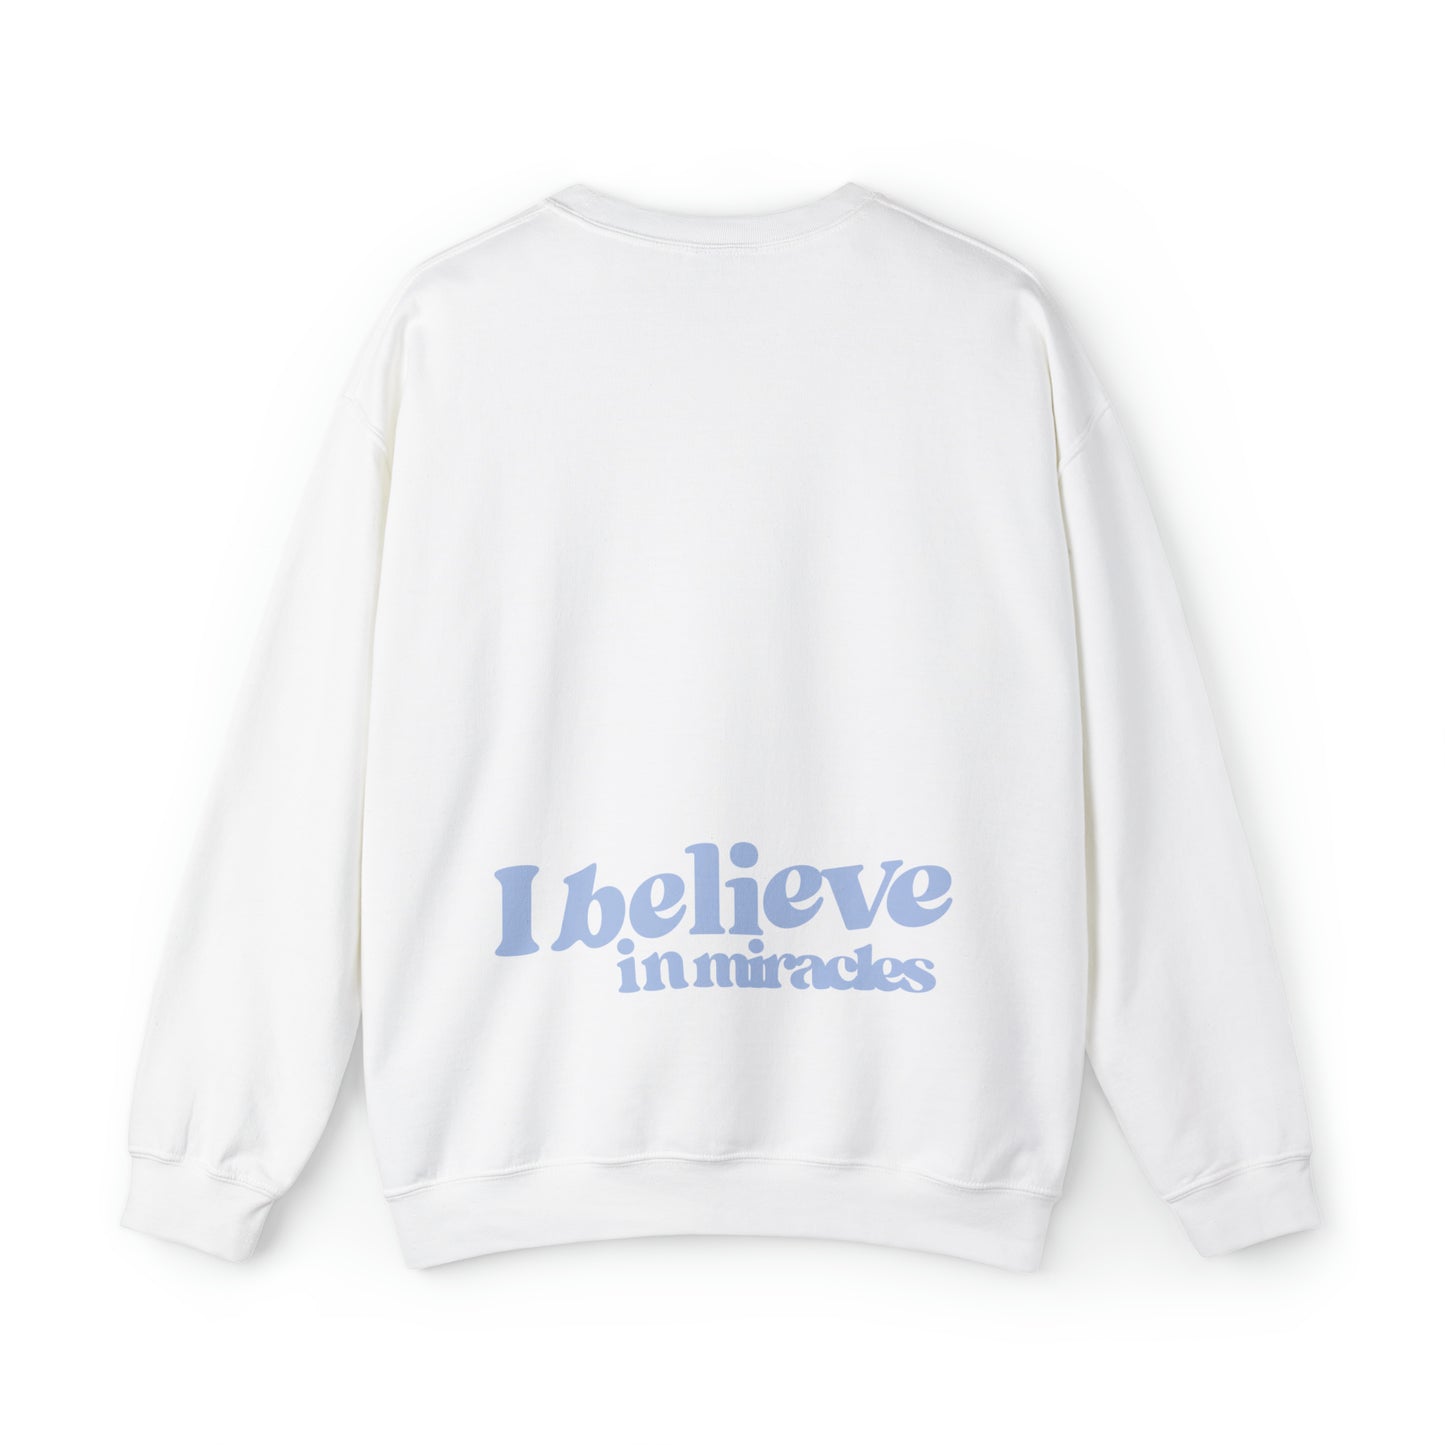 "I believe in miracles" Crewneck Sweatshirt